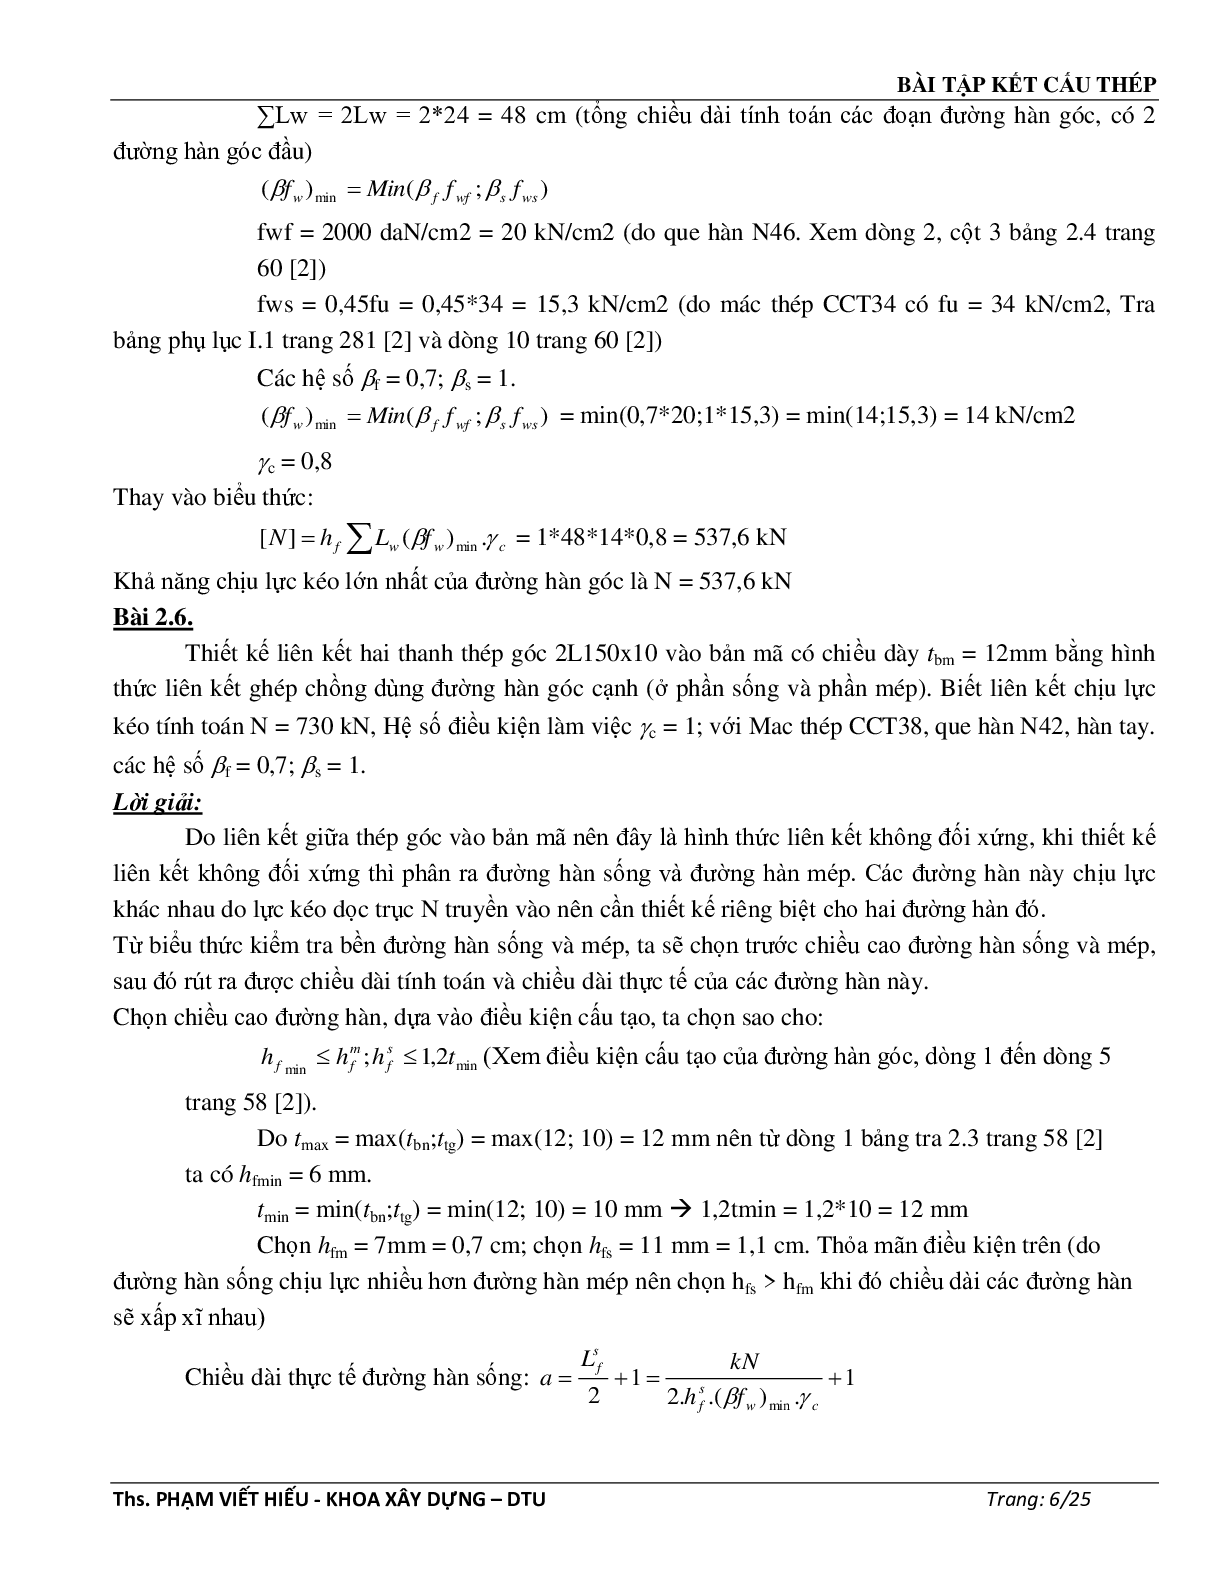 Ngân hàng bài tập môn Kết cấu thép (có đáp án) | Trường Đại học Duy Tân (trang 7)